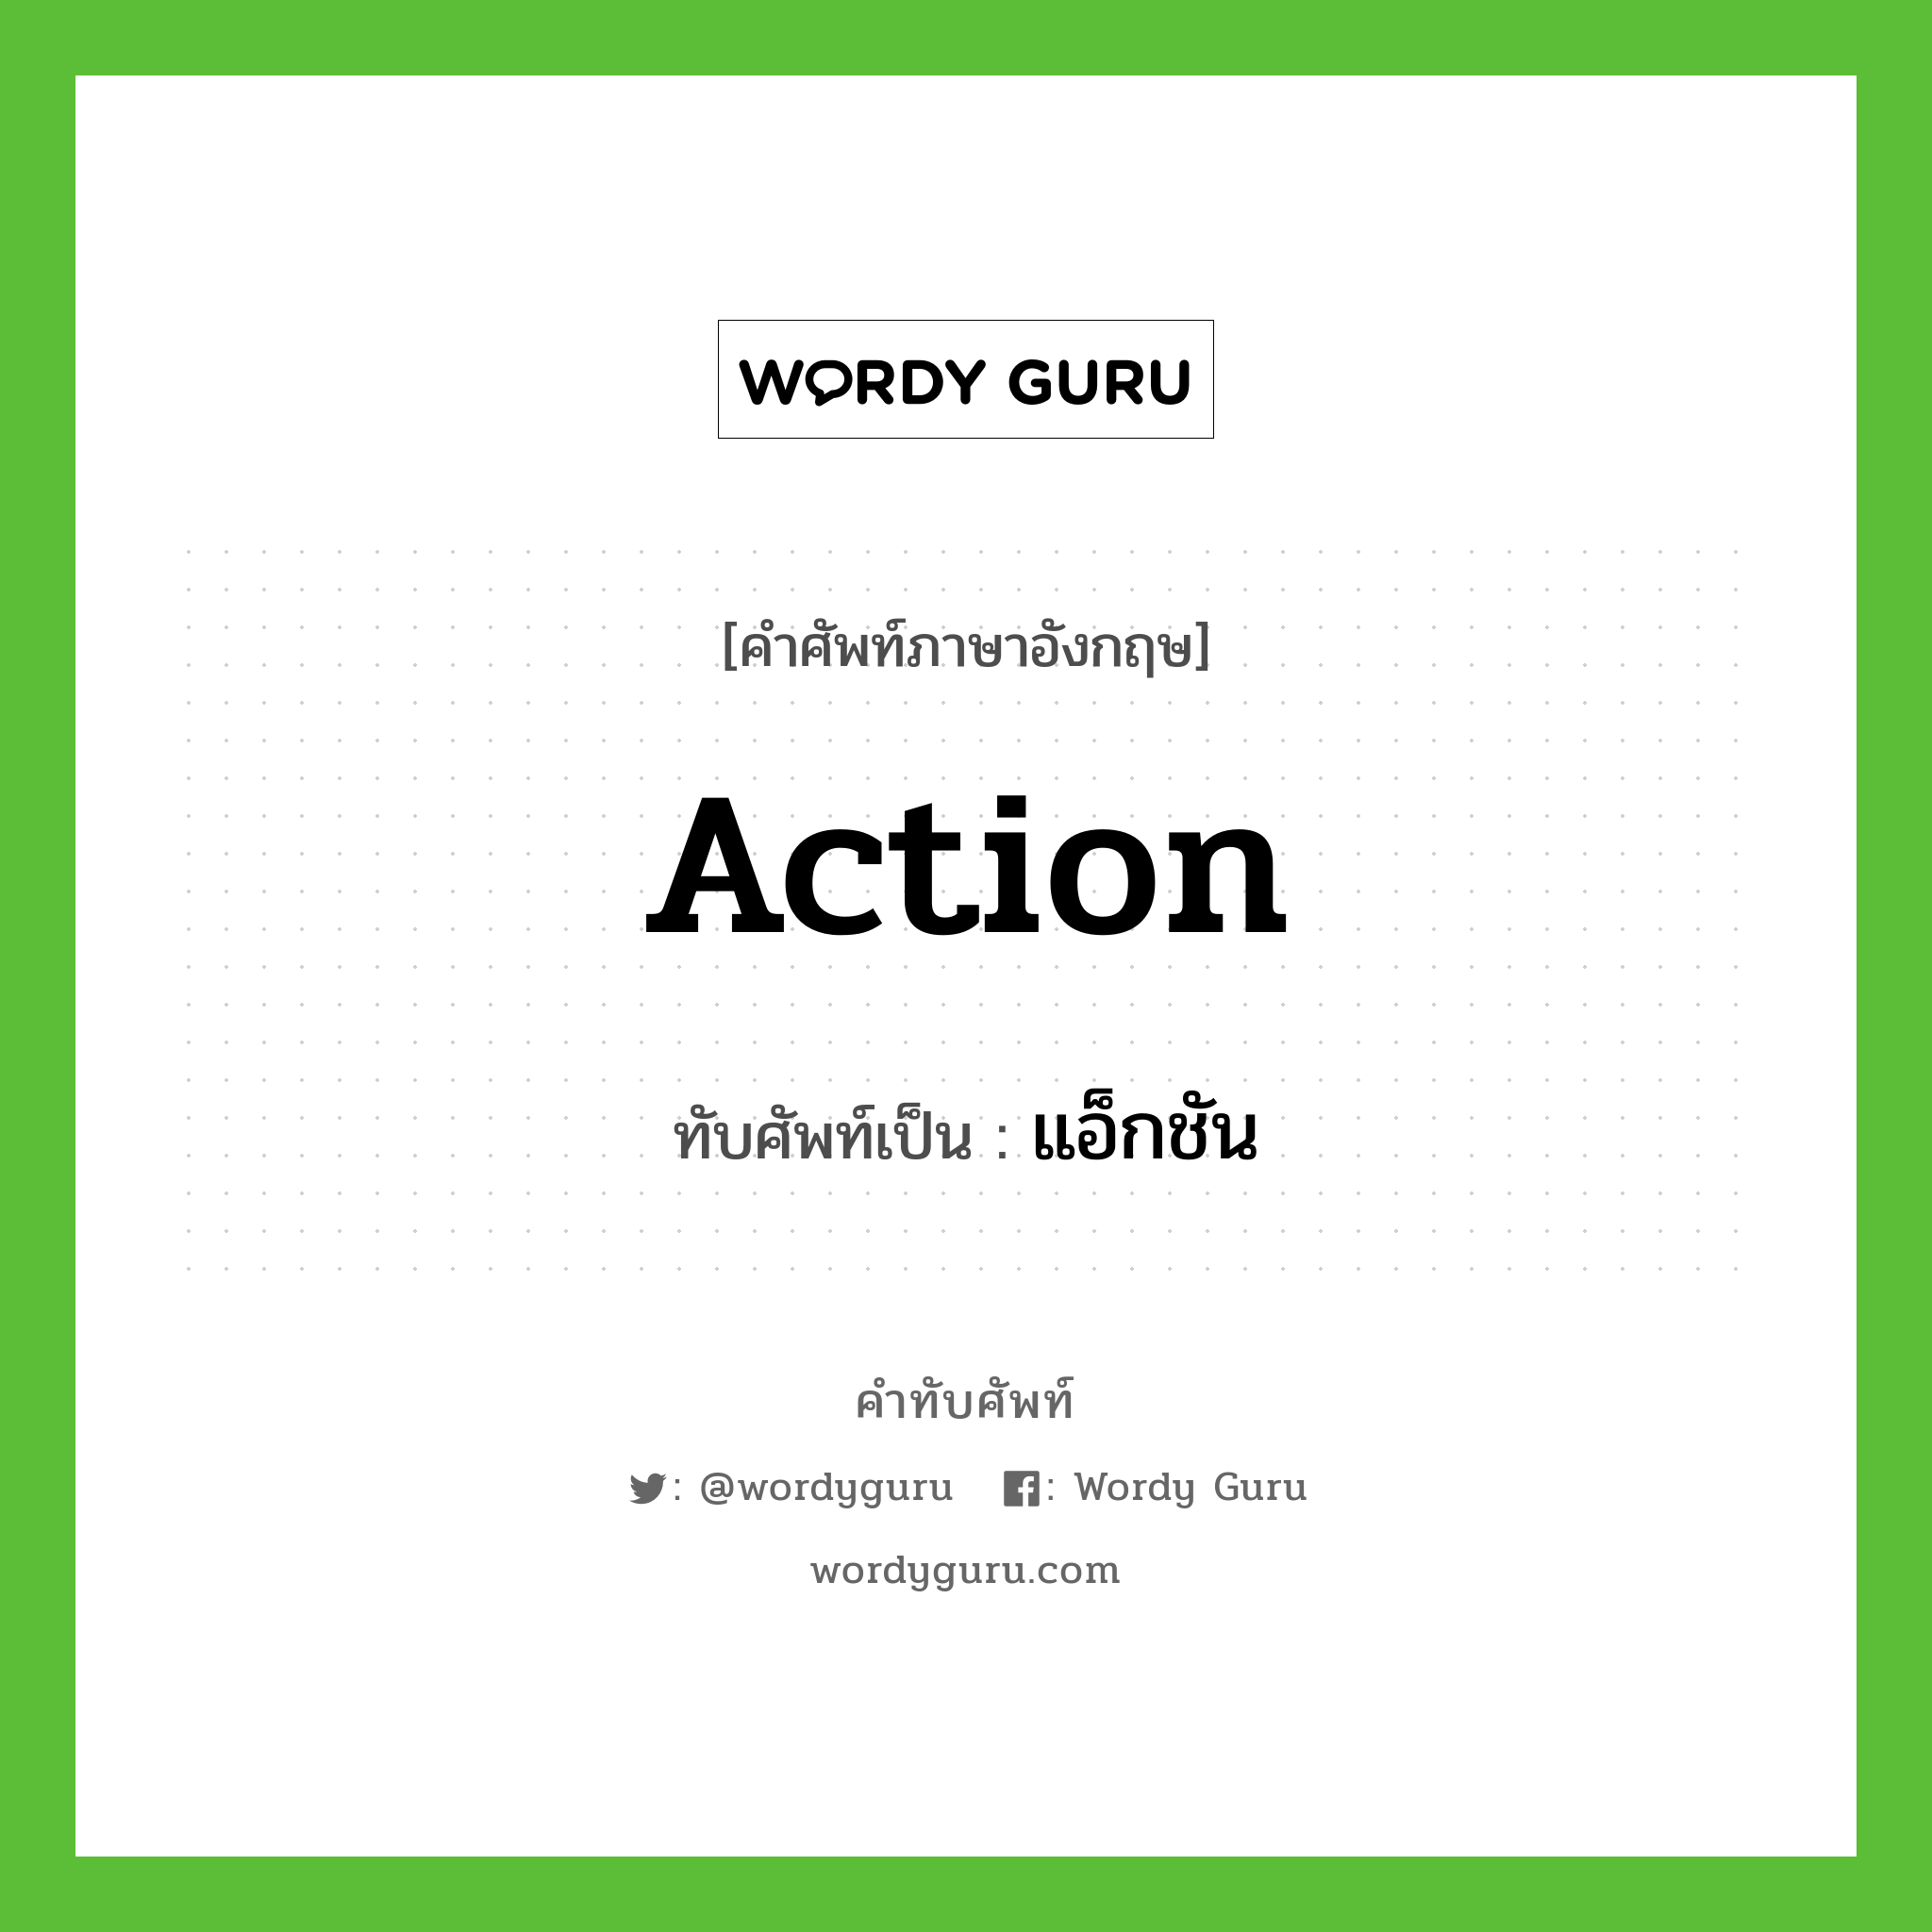 action เขียนเป็นคำไทยว่าอะไร?, คำศัพท์ภาษาอังกฤษ action ทับศัพท์เป็น แอ็กชัน